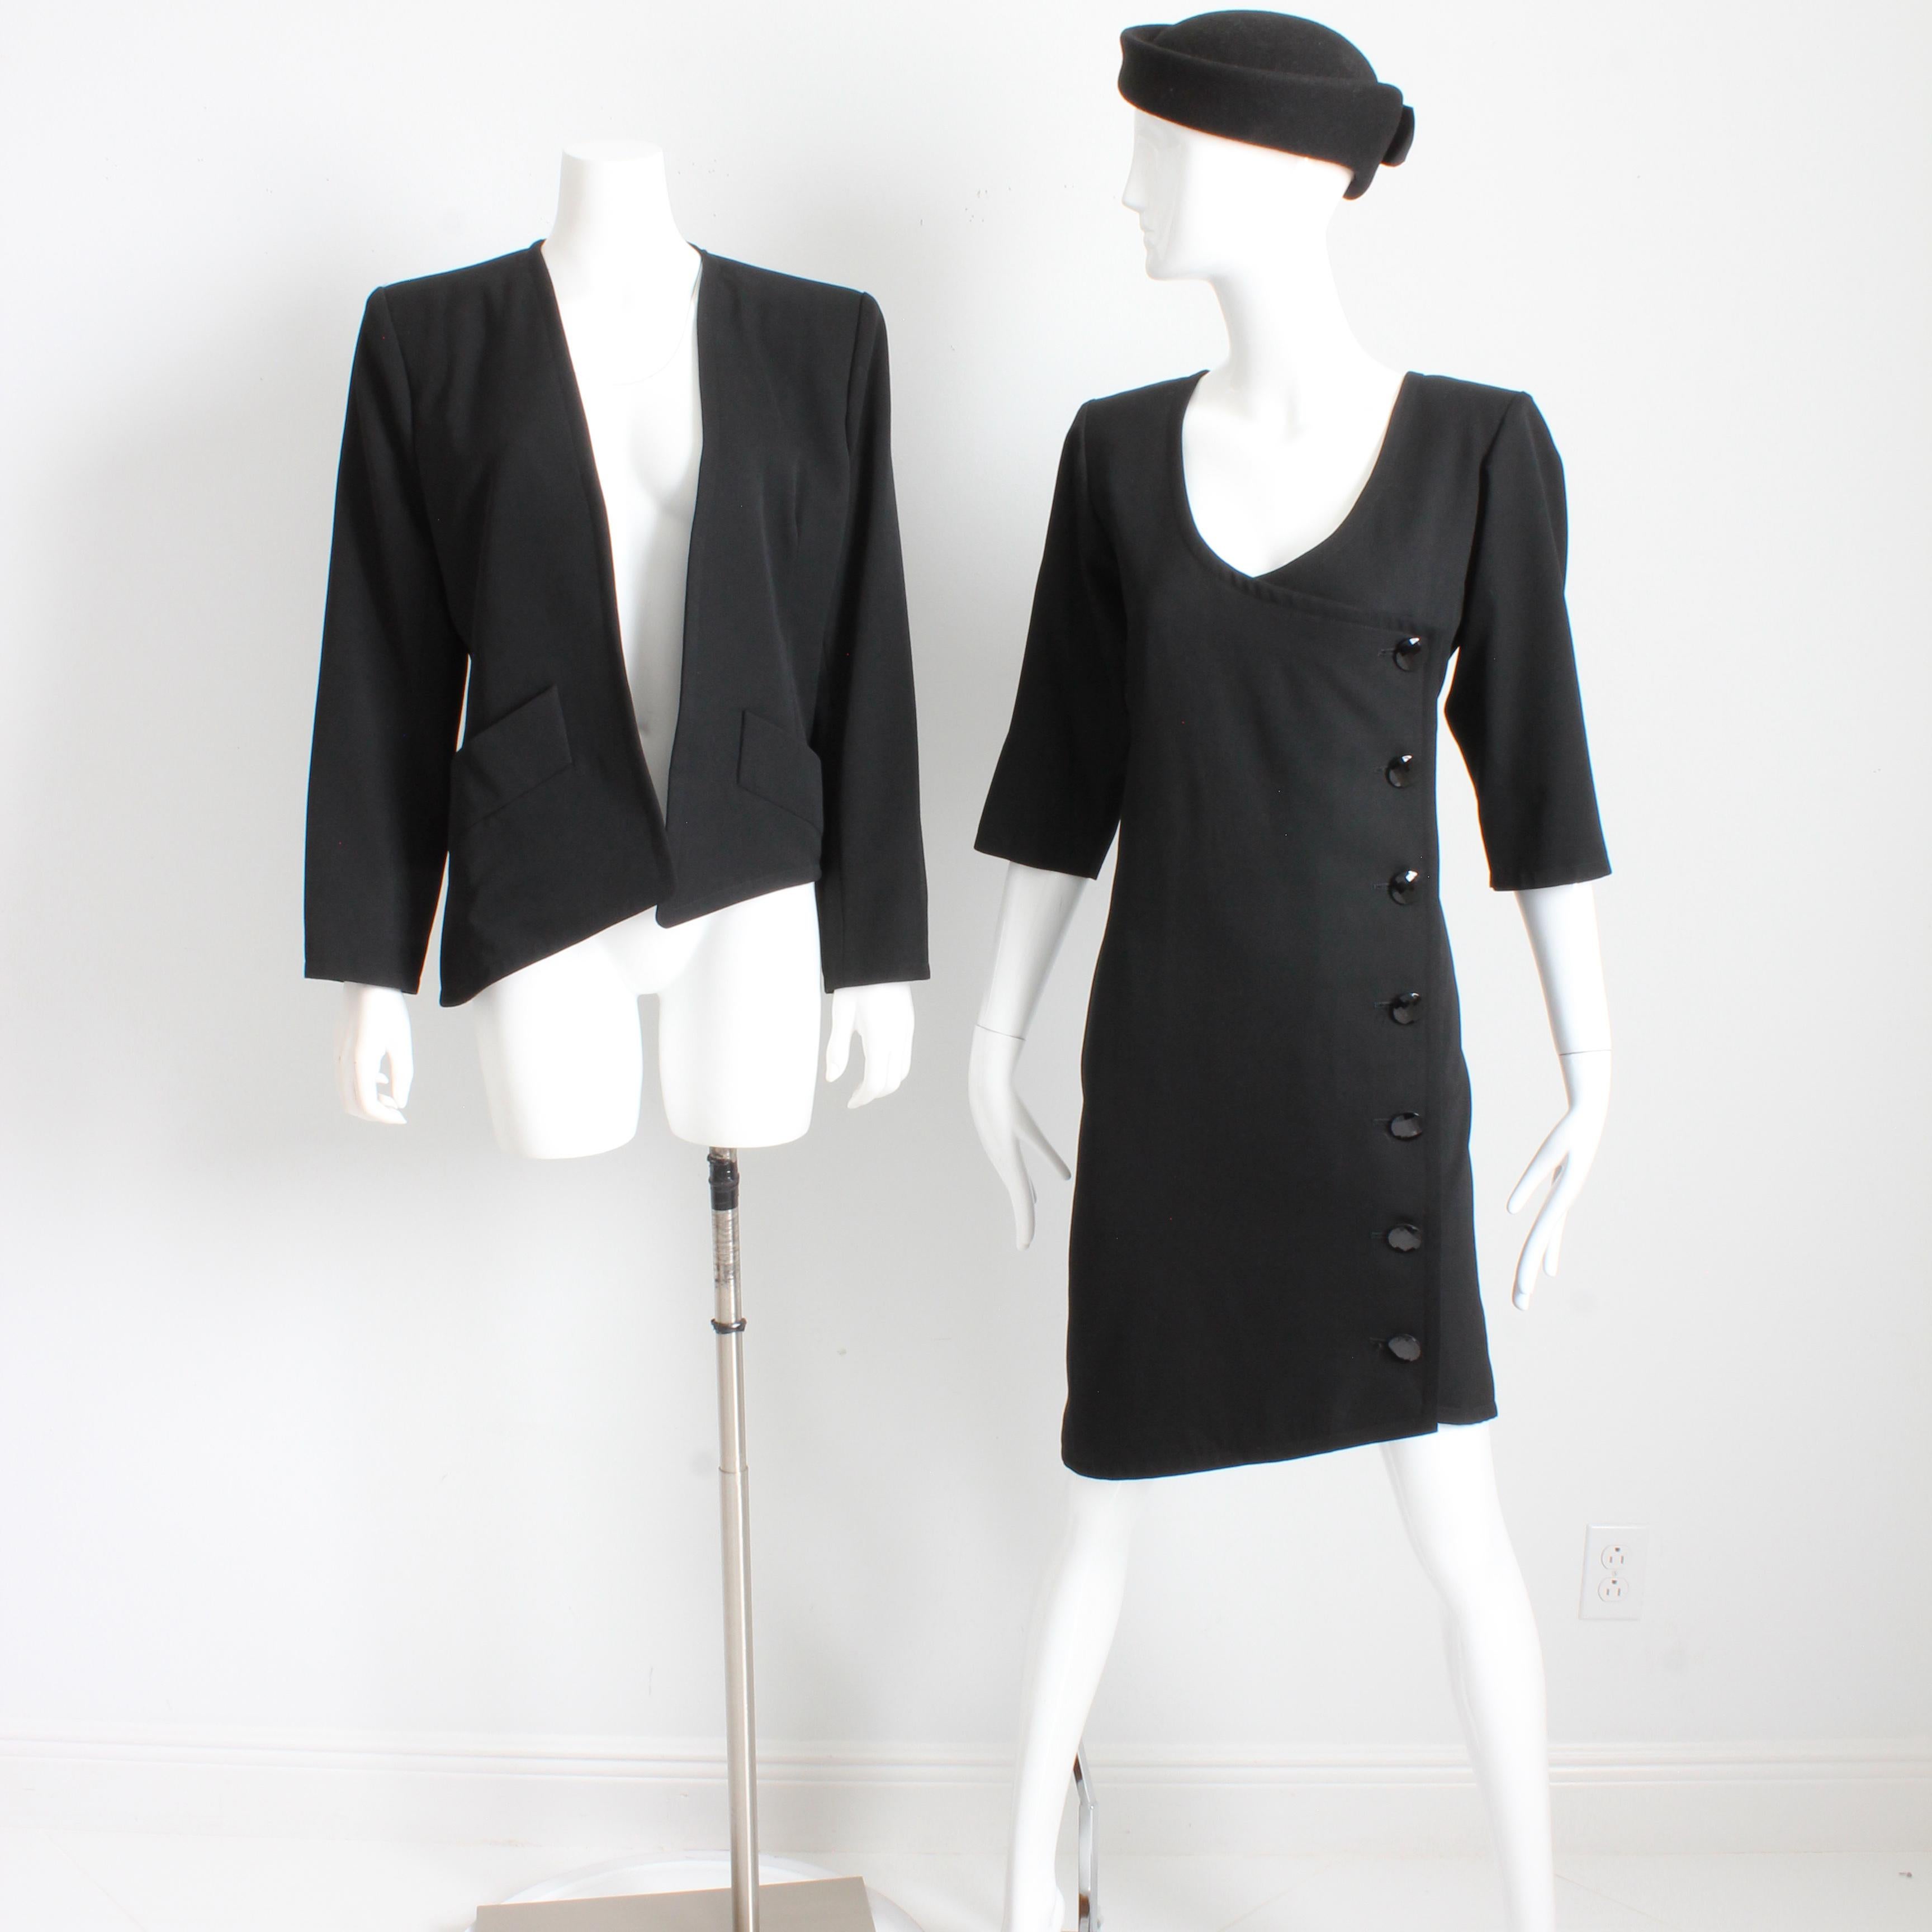 Authentique, d'occasion, vintage Yves Saint Laurent Rive Gauche robe et veste, ensemble 2 pièces, probablement réalisé au début des années 1990. Confectionnées en gabardine de laine noire, ces deux pièces sont doublées de satin noir. La veste est